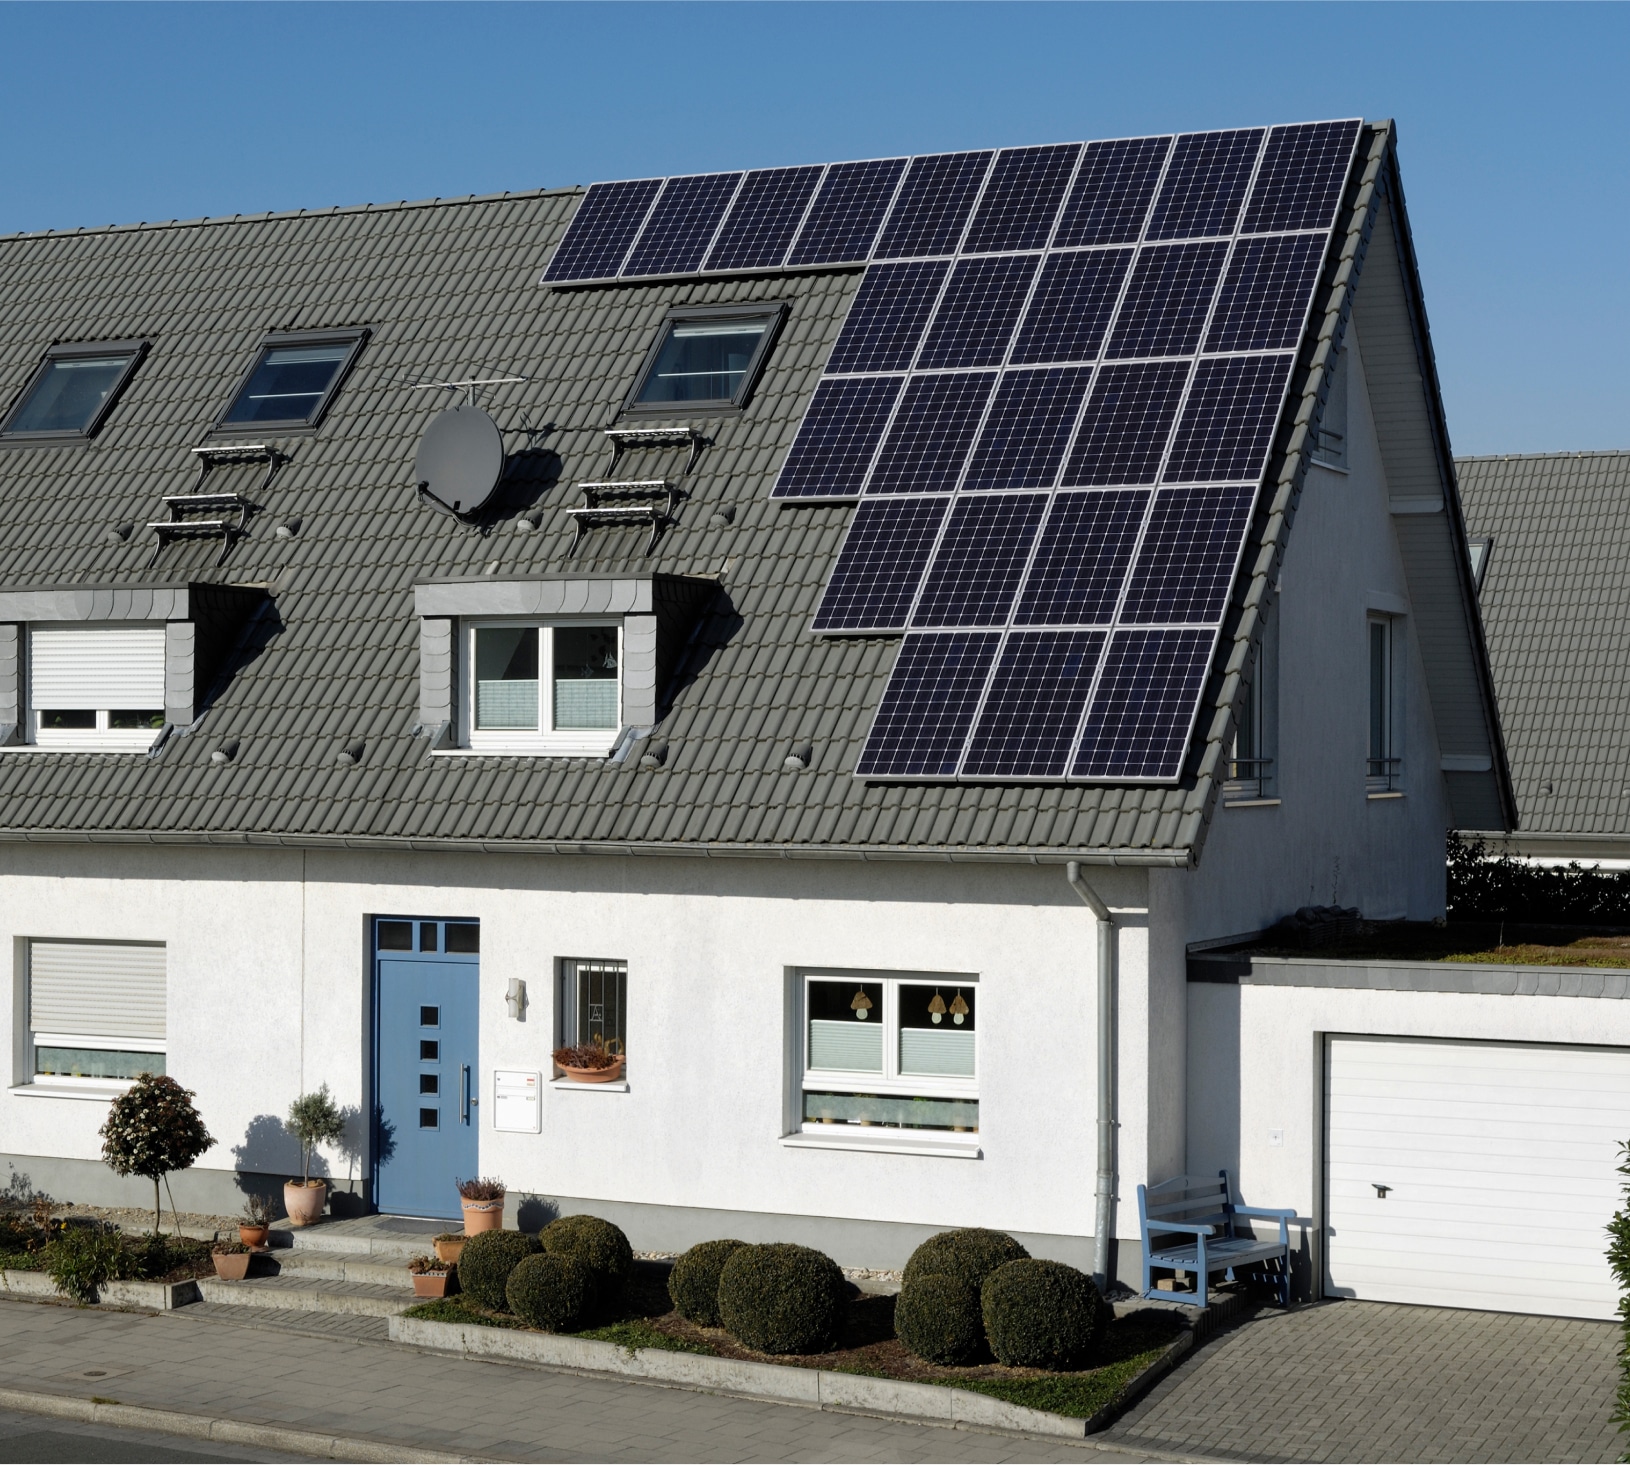 Haus mit Solarpaneelen am Dach